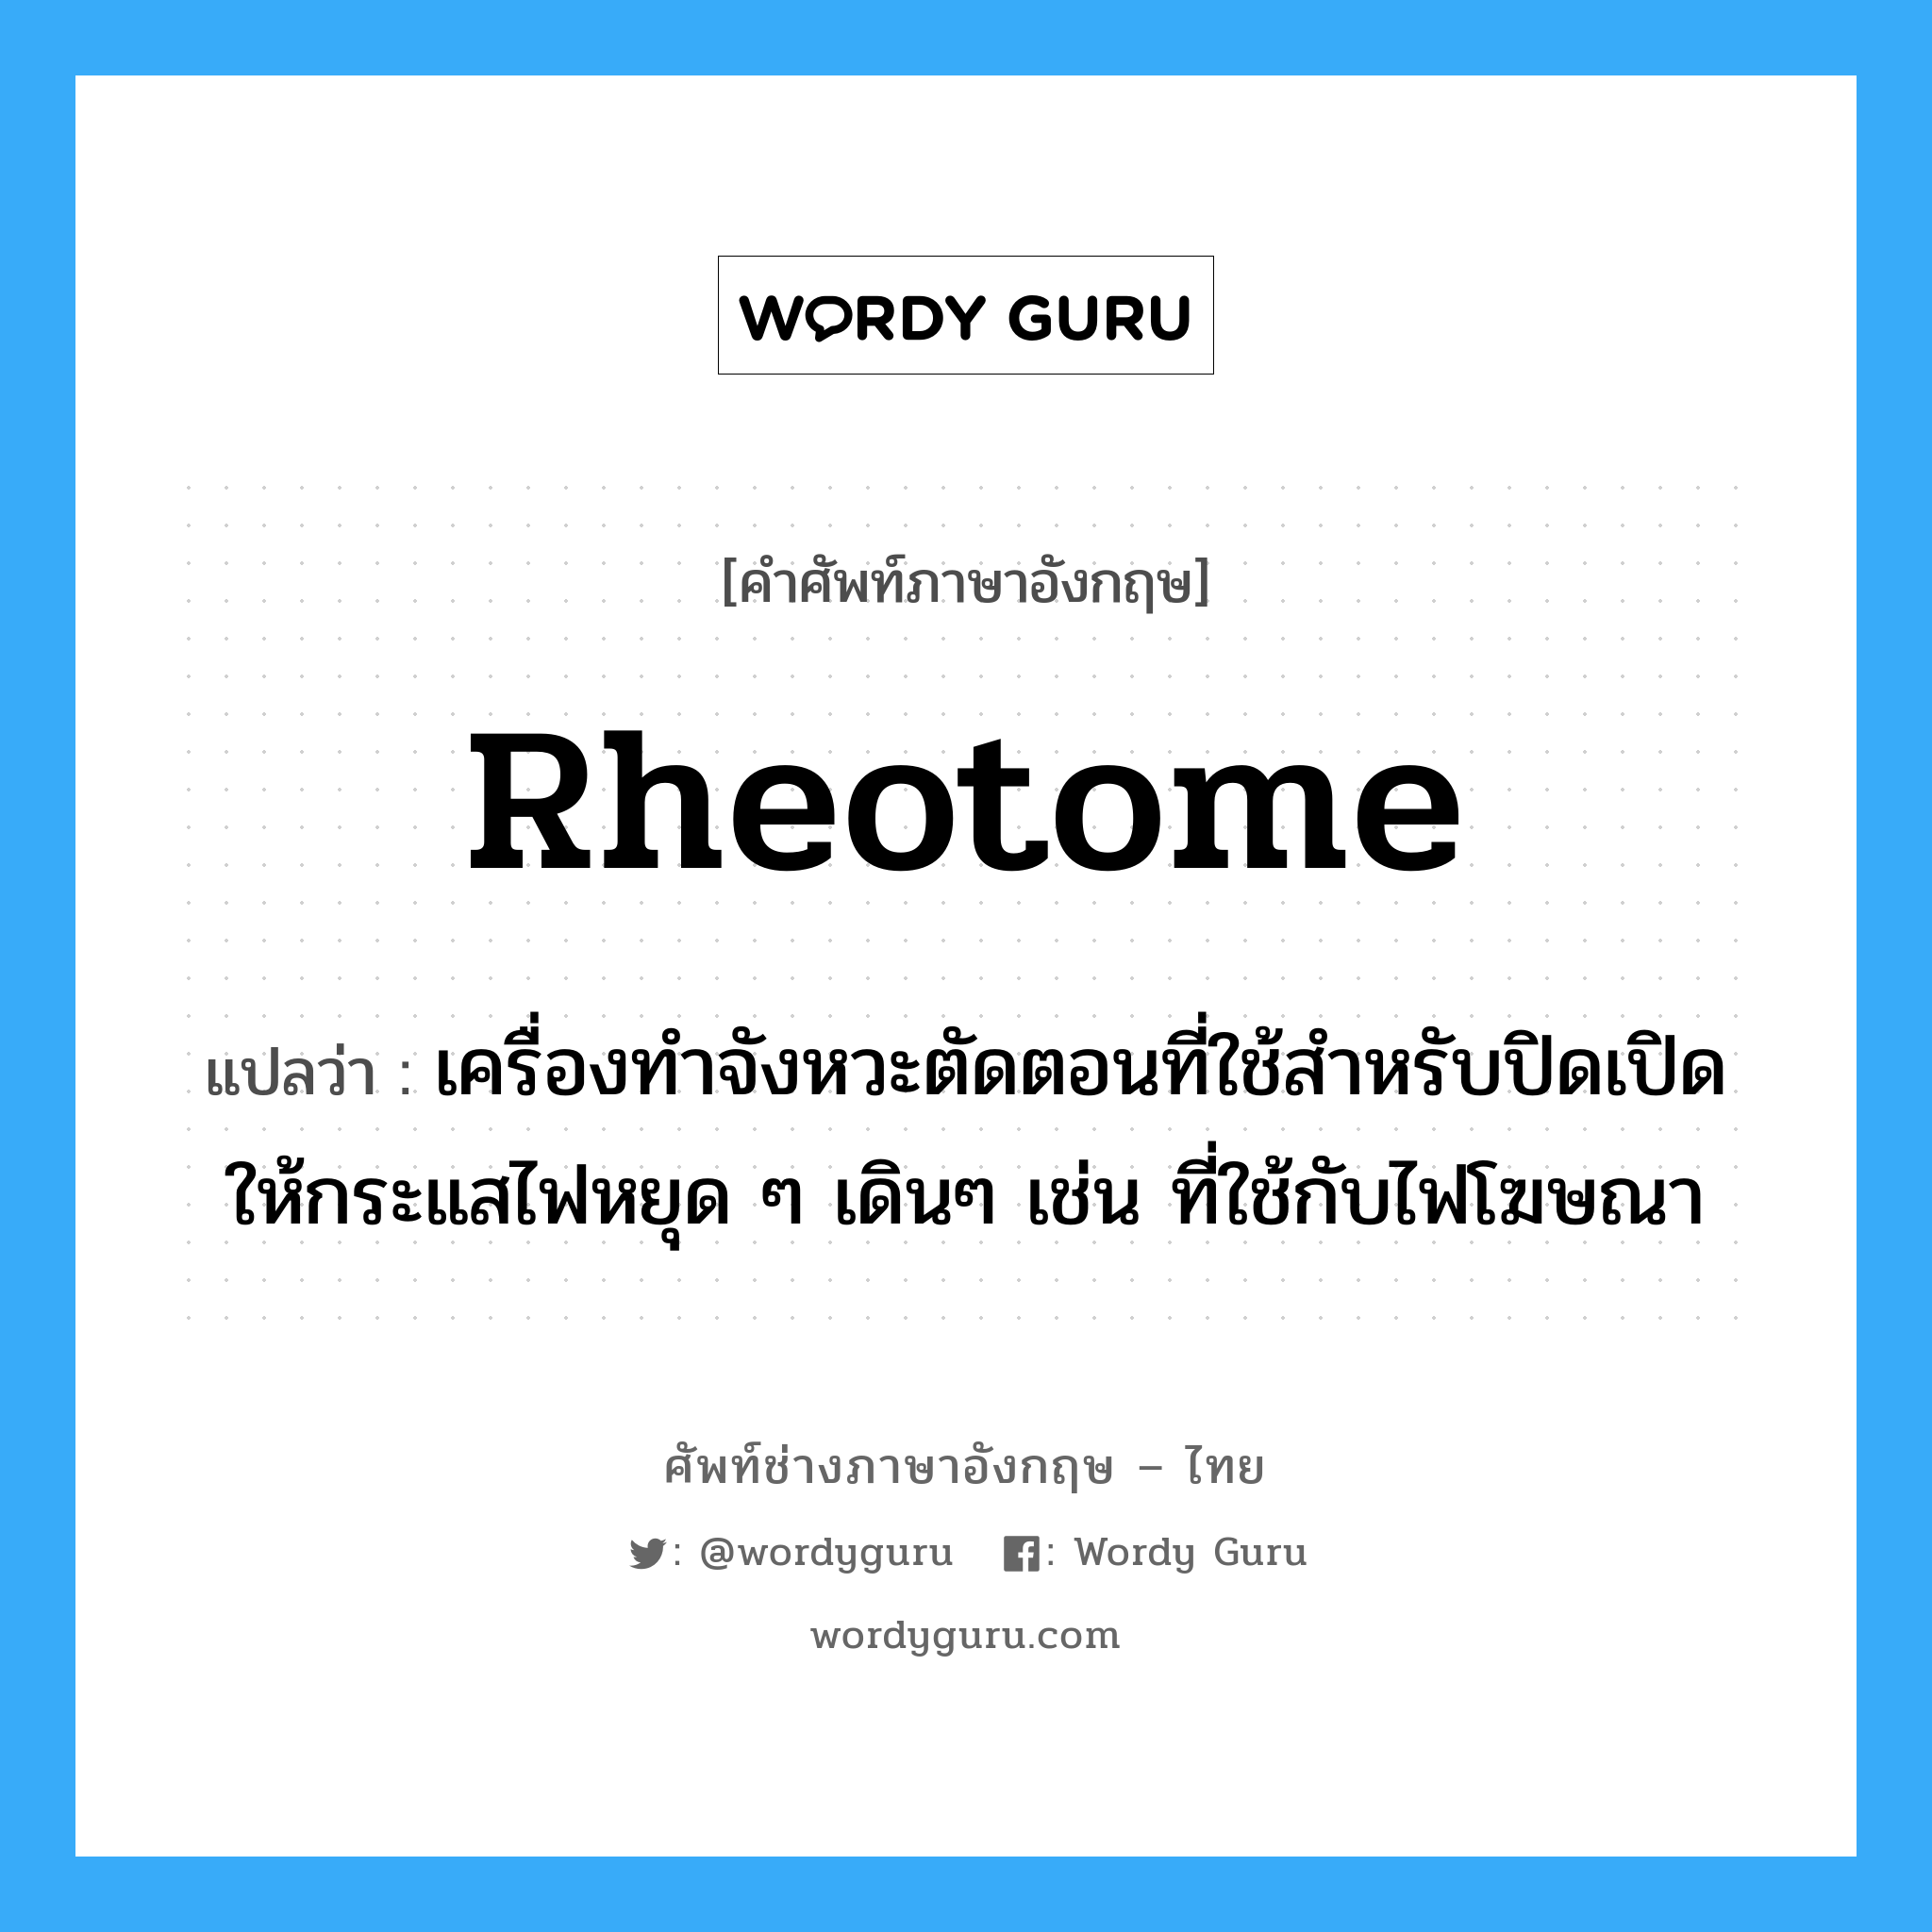 rheotome แปลว่า?, คำศัพท์ช่างภาษาอังกฤษ - ไทย rheotome คำศัพท์ภาษาอังกฤษ rheotome แปลว่า เครื่องทำจังหวะตัดตอนที่ใช้สำหรับปิดเปิดให้กระแสไฟหยุด ๆ เดินๆ เช่น ที่ใช้กับไฟโฆษณา